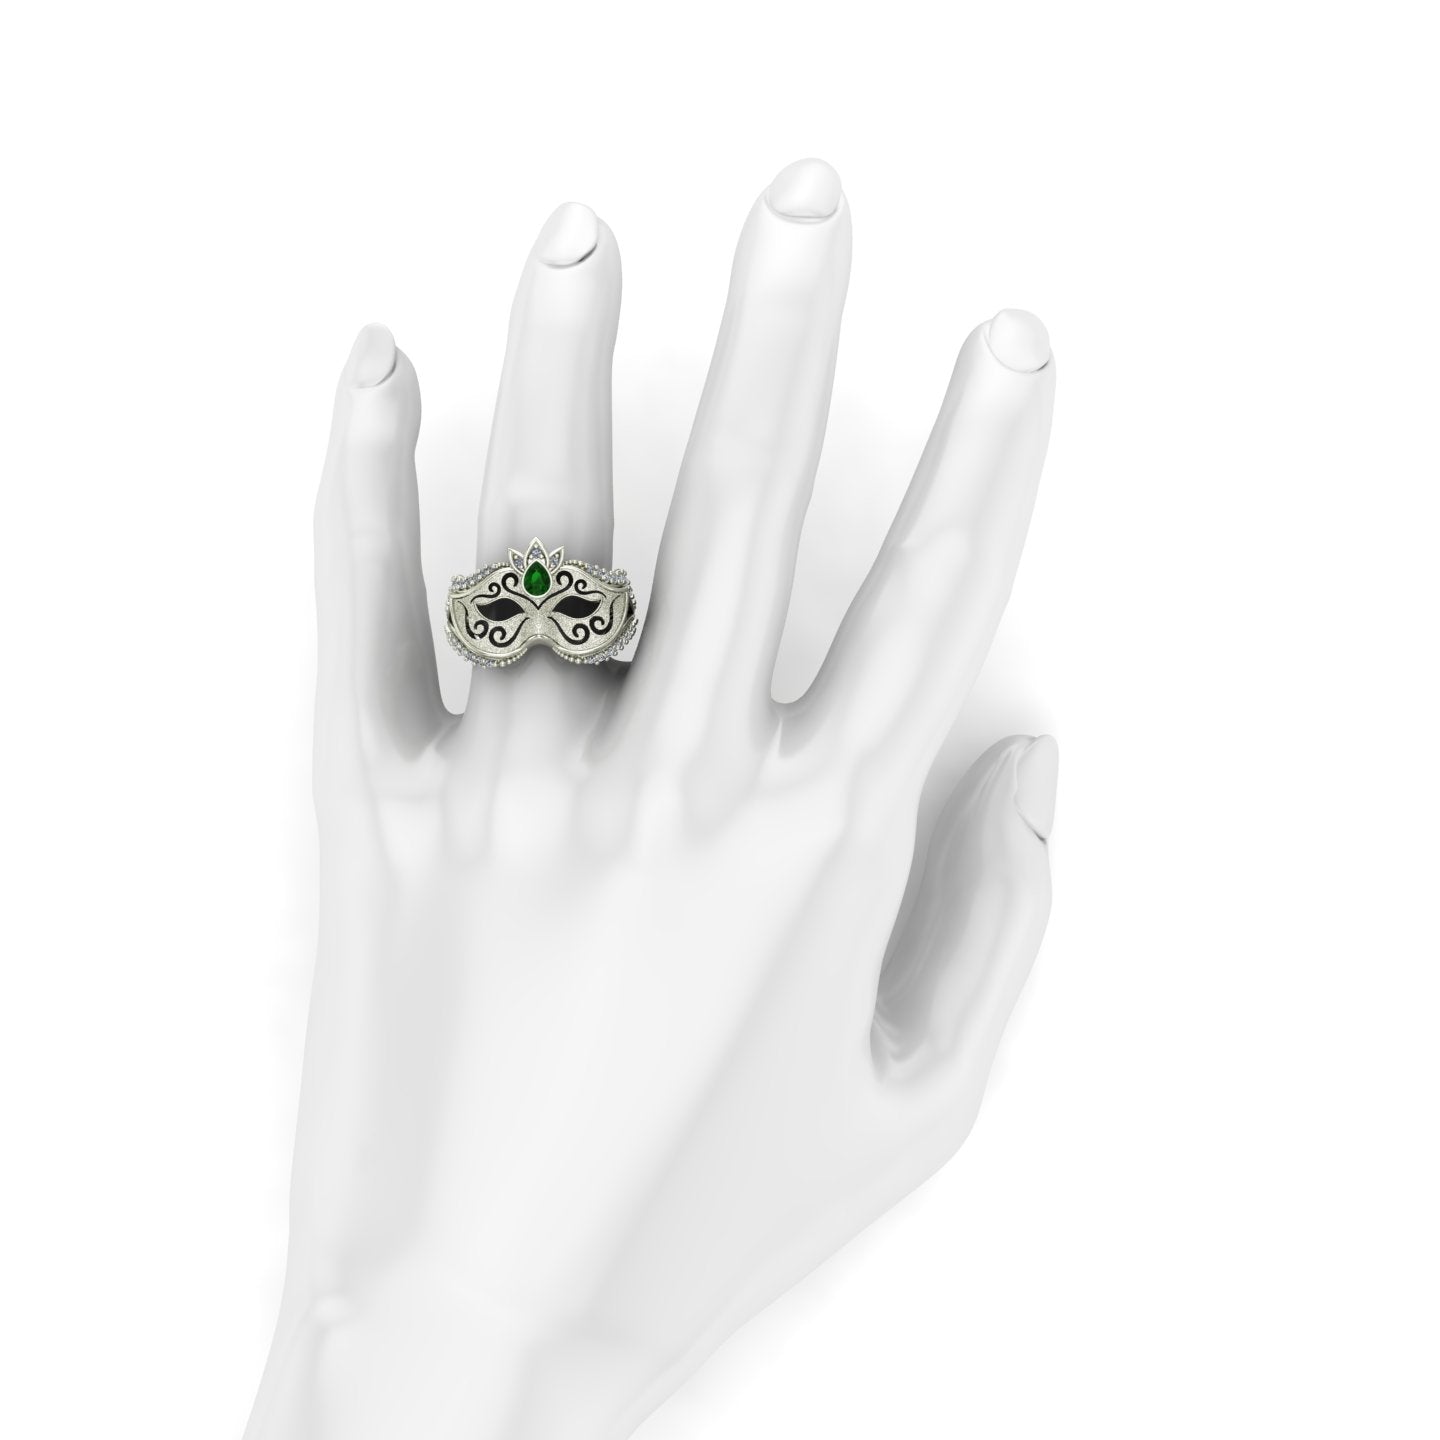 bezel set pear cut tsavorite green garnet and diamond venetian carnival mask ring in 14k white gold - Charles Babb Designs - on hand